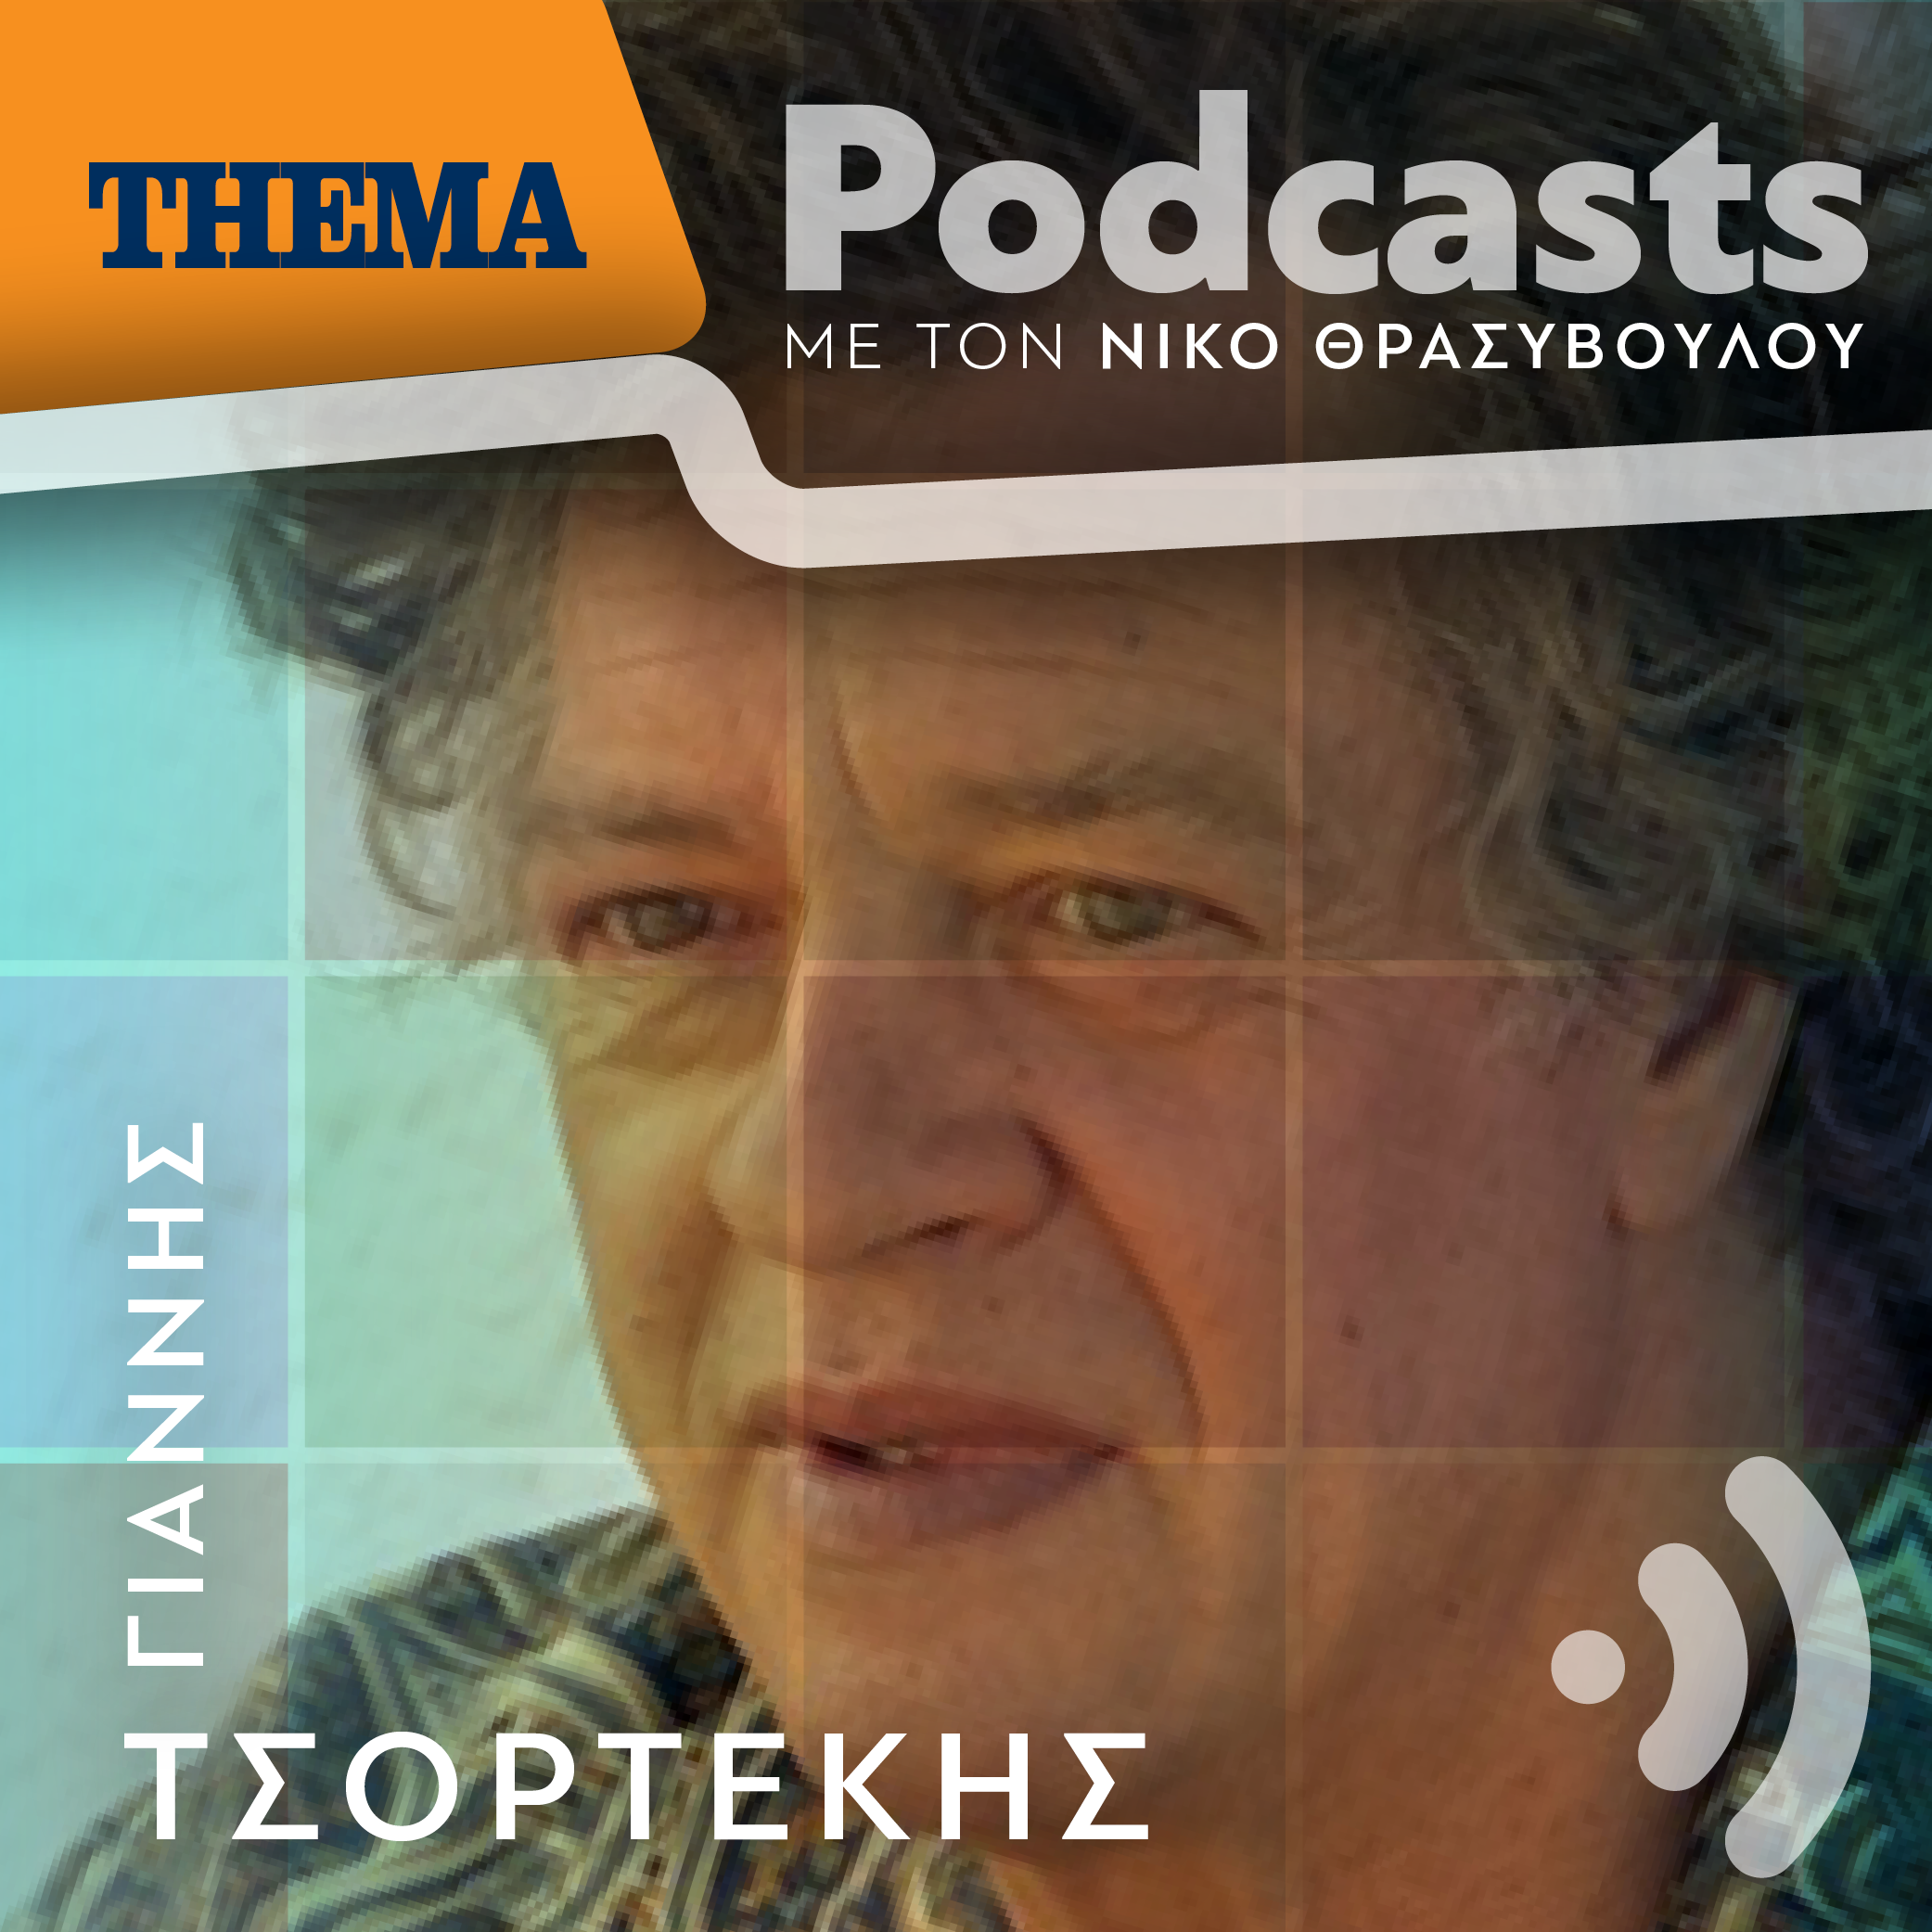 Γιάννης Τσορτέκης: «Το σημαντικό δεν είναι το μέλλον αλλά το παρόν, πρέπει να είμαστε "αντιδραστικοί" ως πολίτες και άνθρωποι»